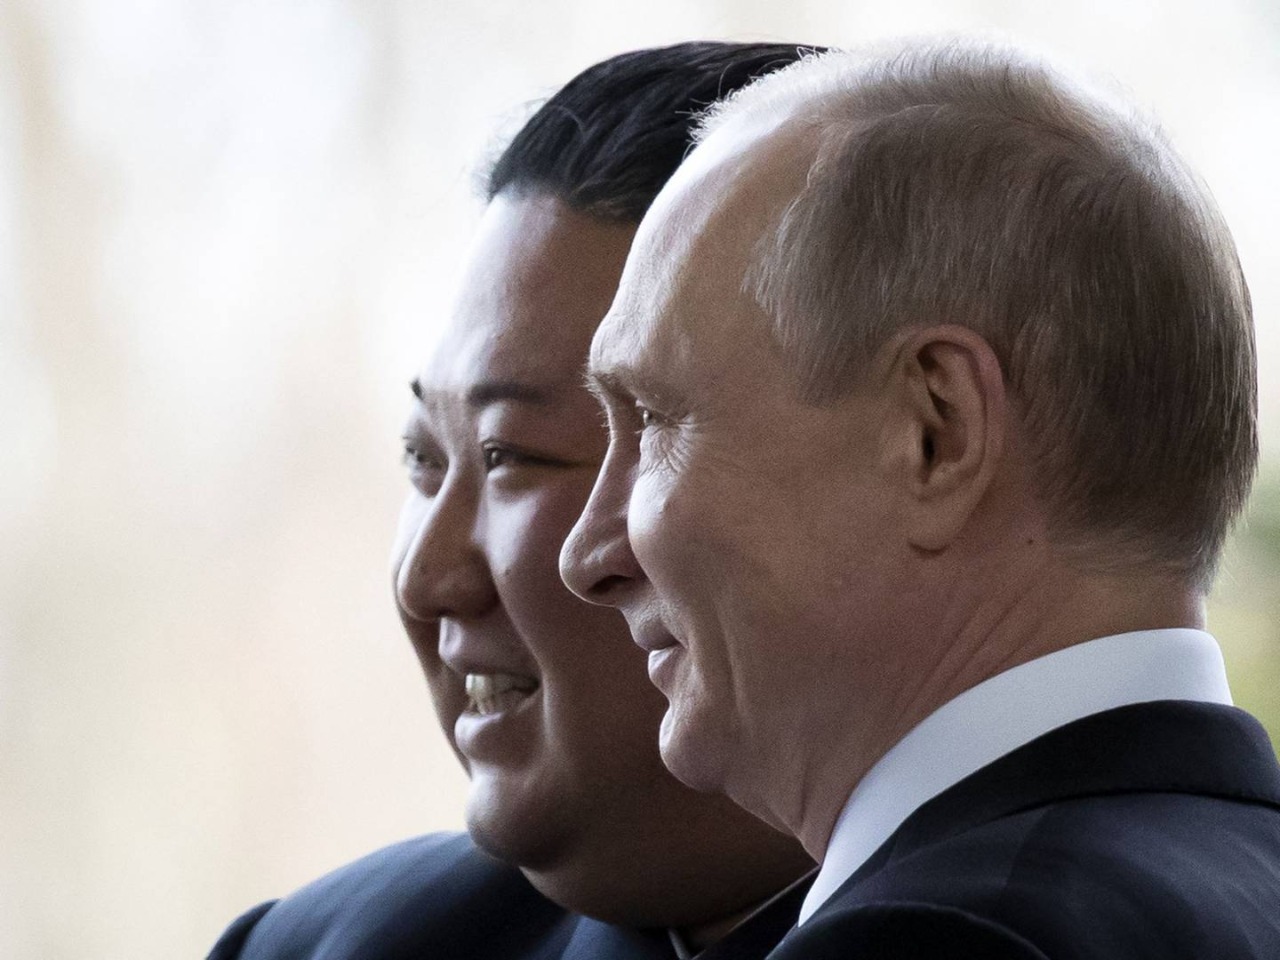 Rusia promete “ampliar” sus relaciones con Corea del Norte en una carta de Putin a Kim Jong-un